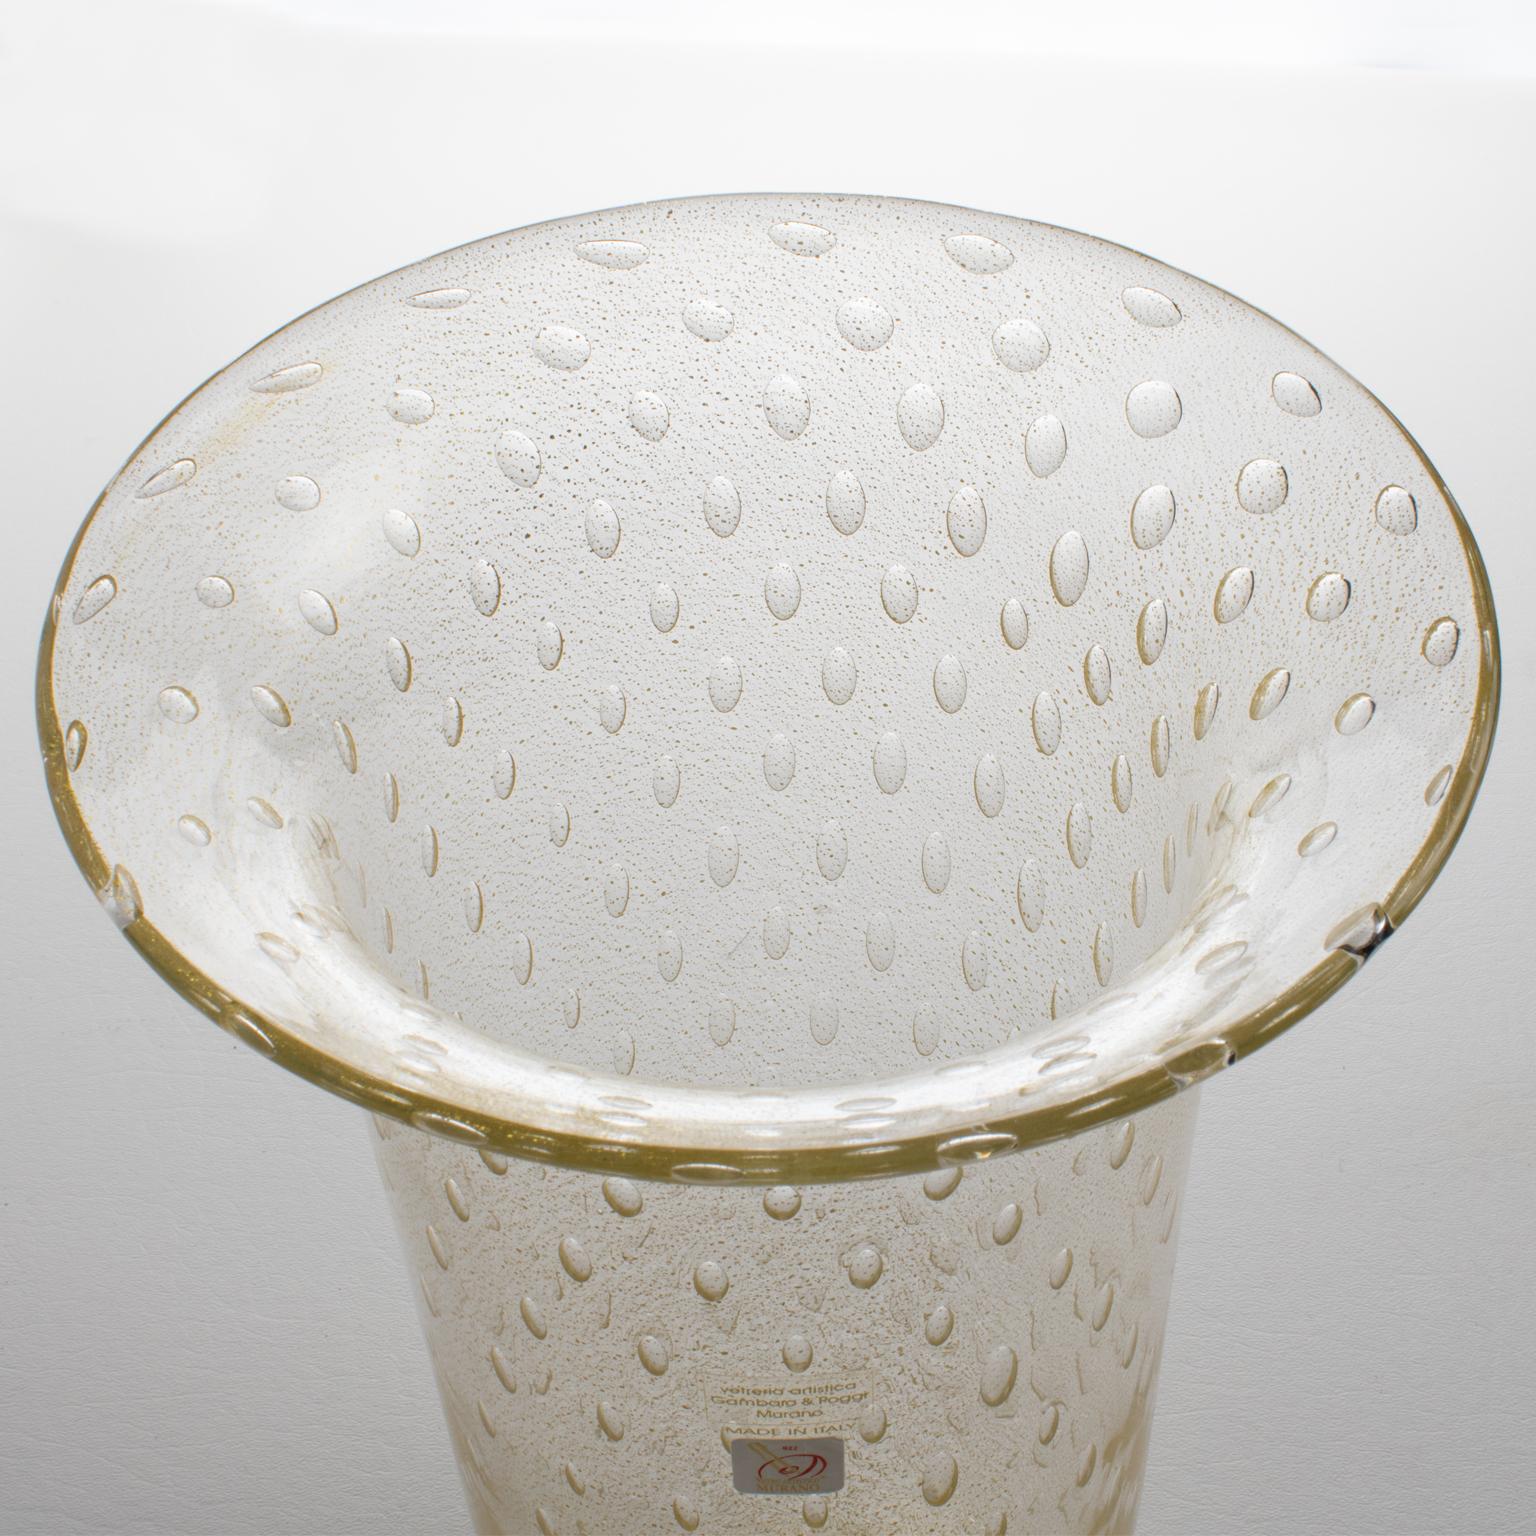 Italian Art Glass Murano Vase Gold Flakes and Bubbles by Gambaro & Poggi In Excellent Condition For Sale In Atlanta, GA